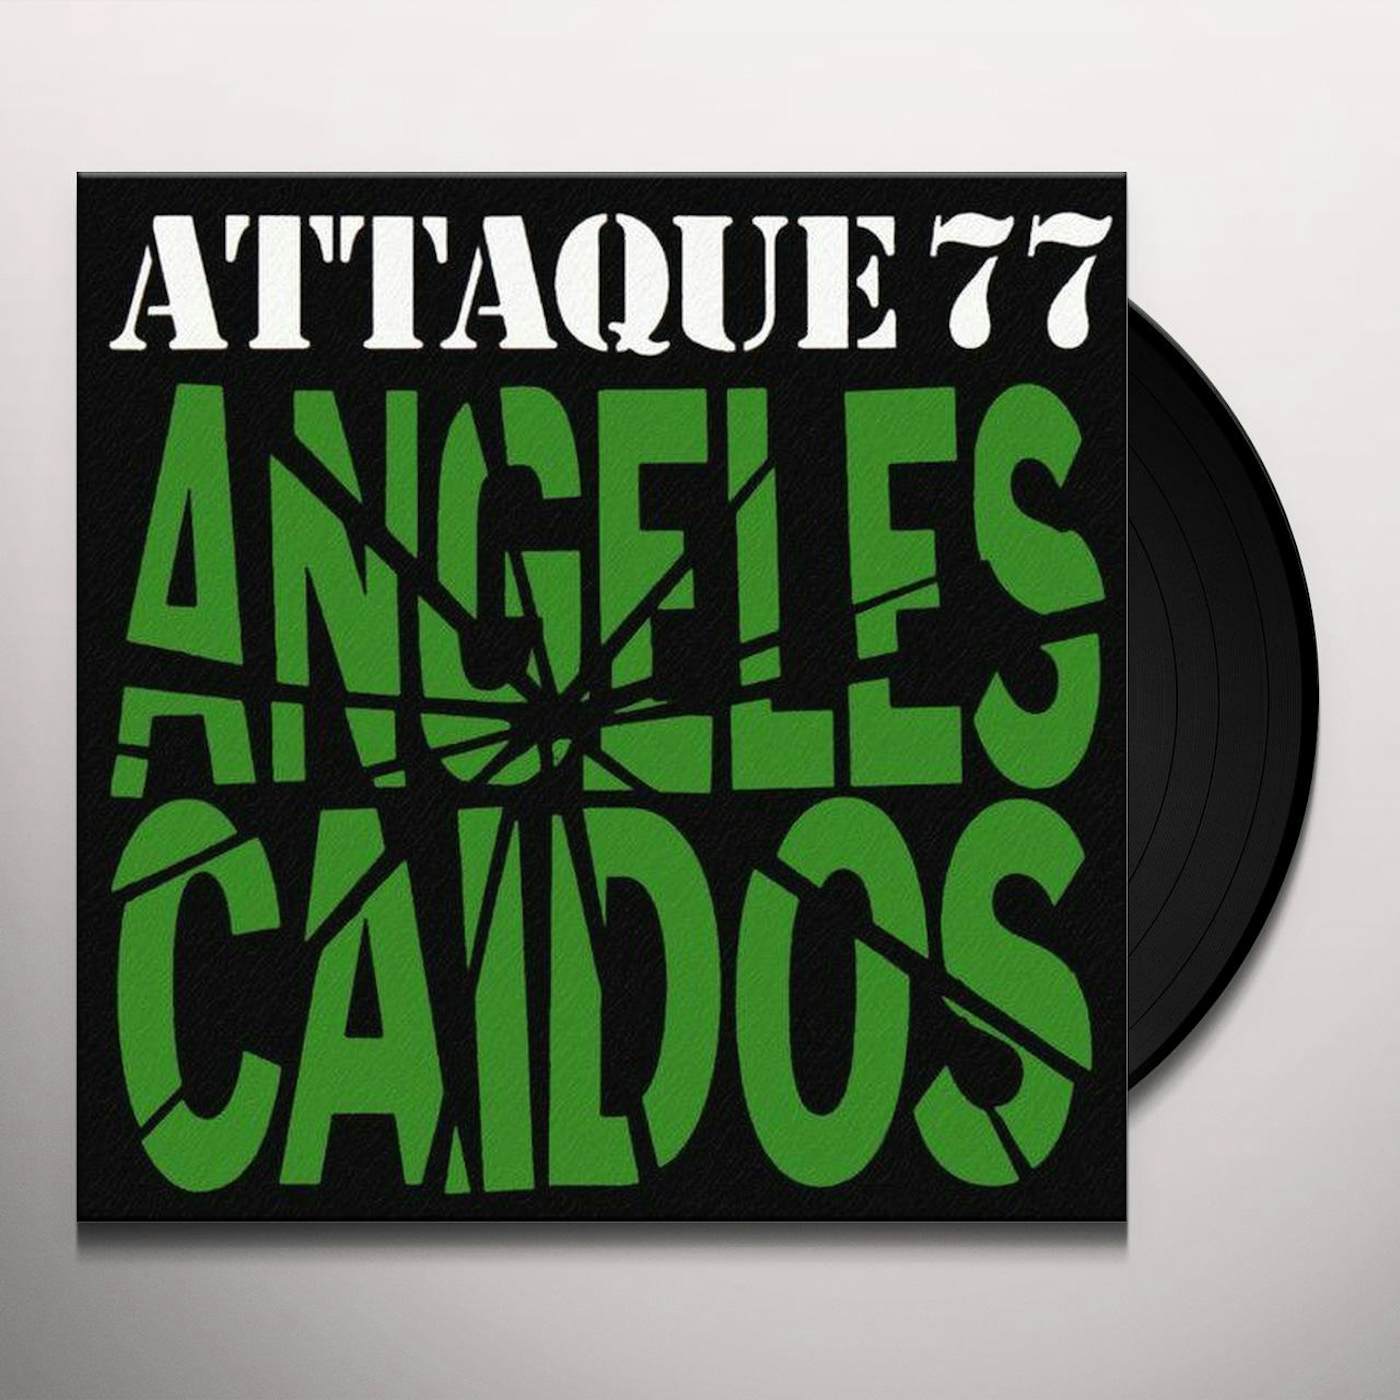 Attaque 77 ANGELES CAIDOS Vinyl Record